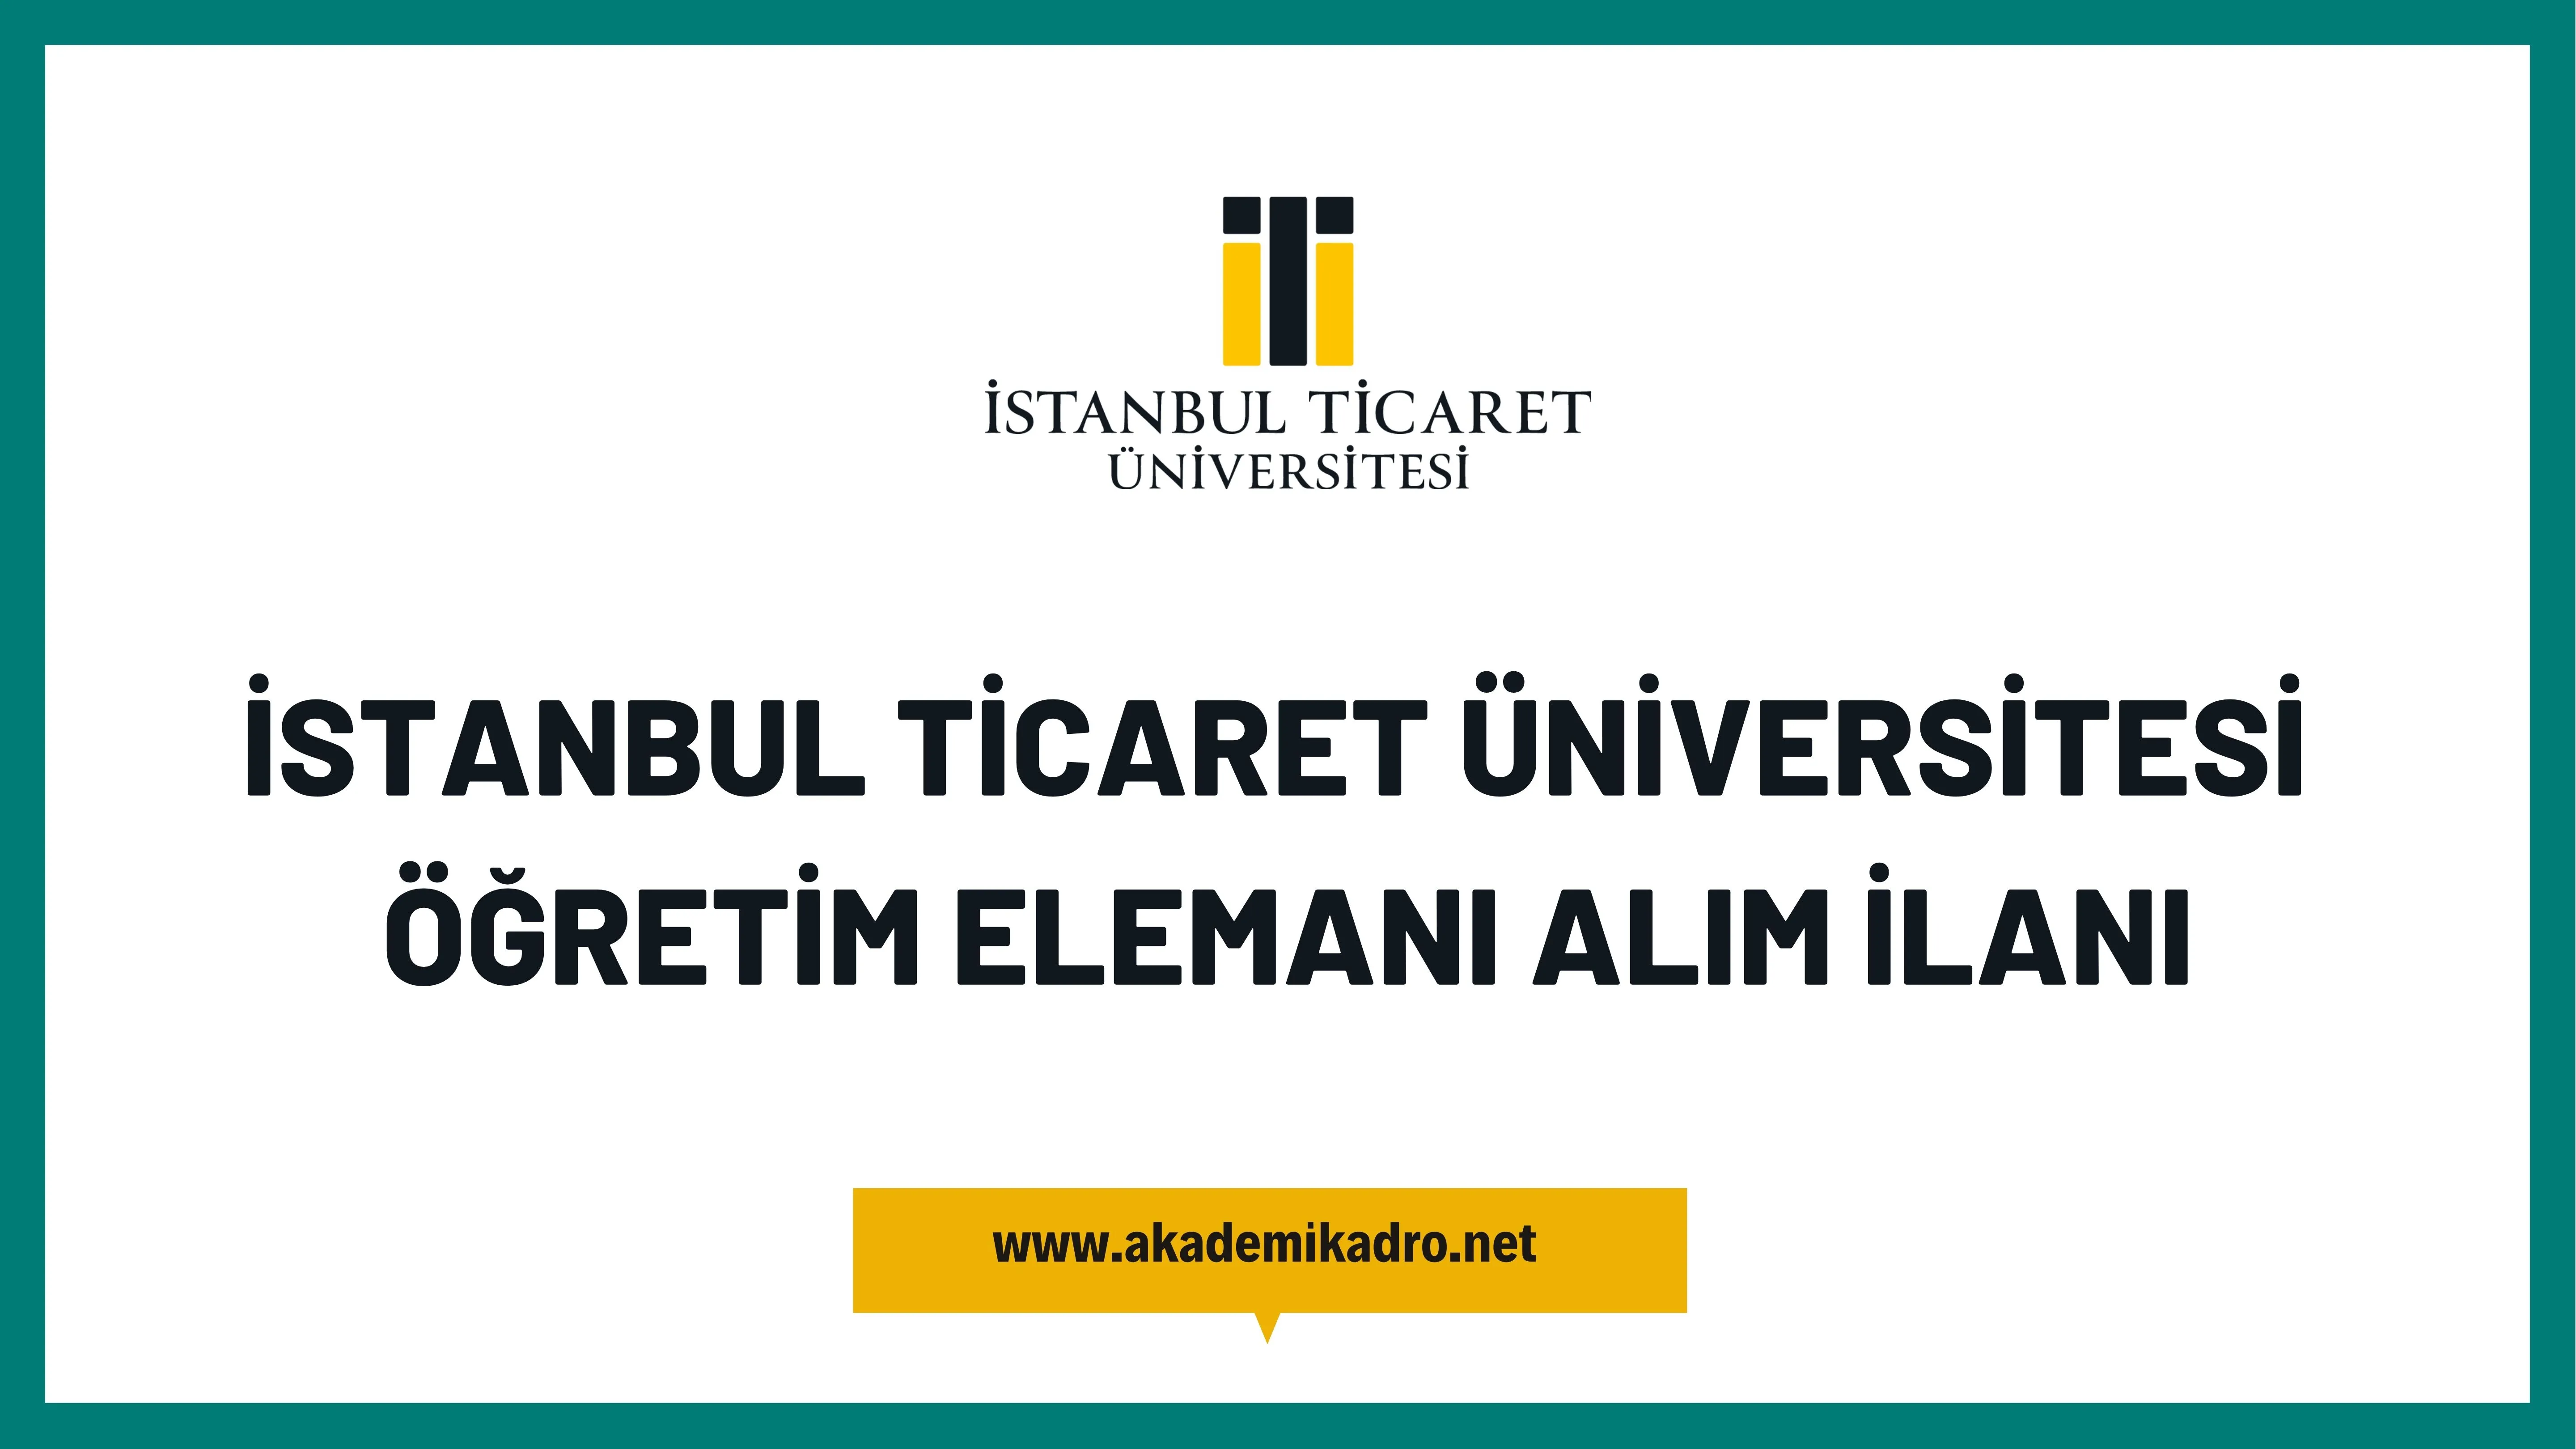 İstanbul Ticaret Üniversitesi 11 Araştırma görevlisi, 11 Öğretim görevlisi ve 29 Öğretim üyesi alacak.